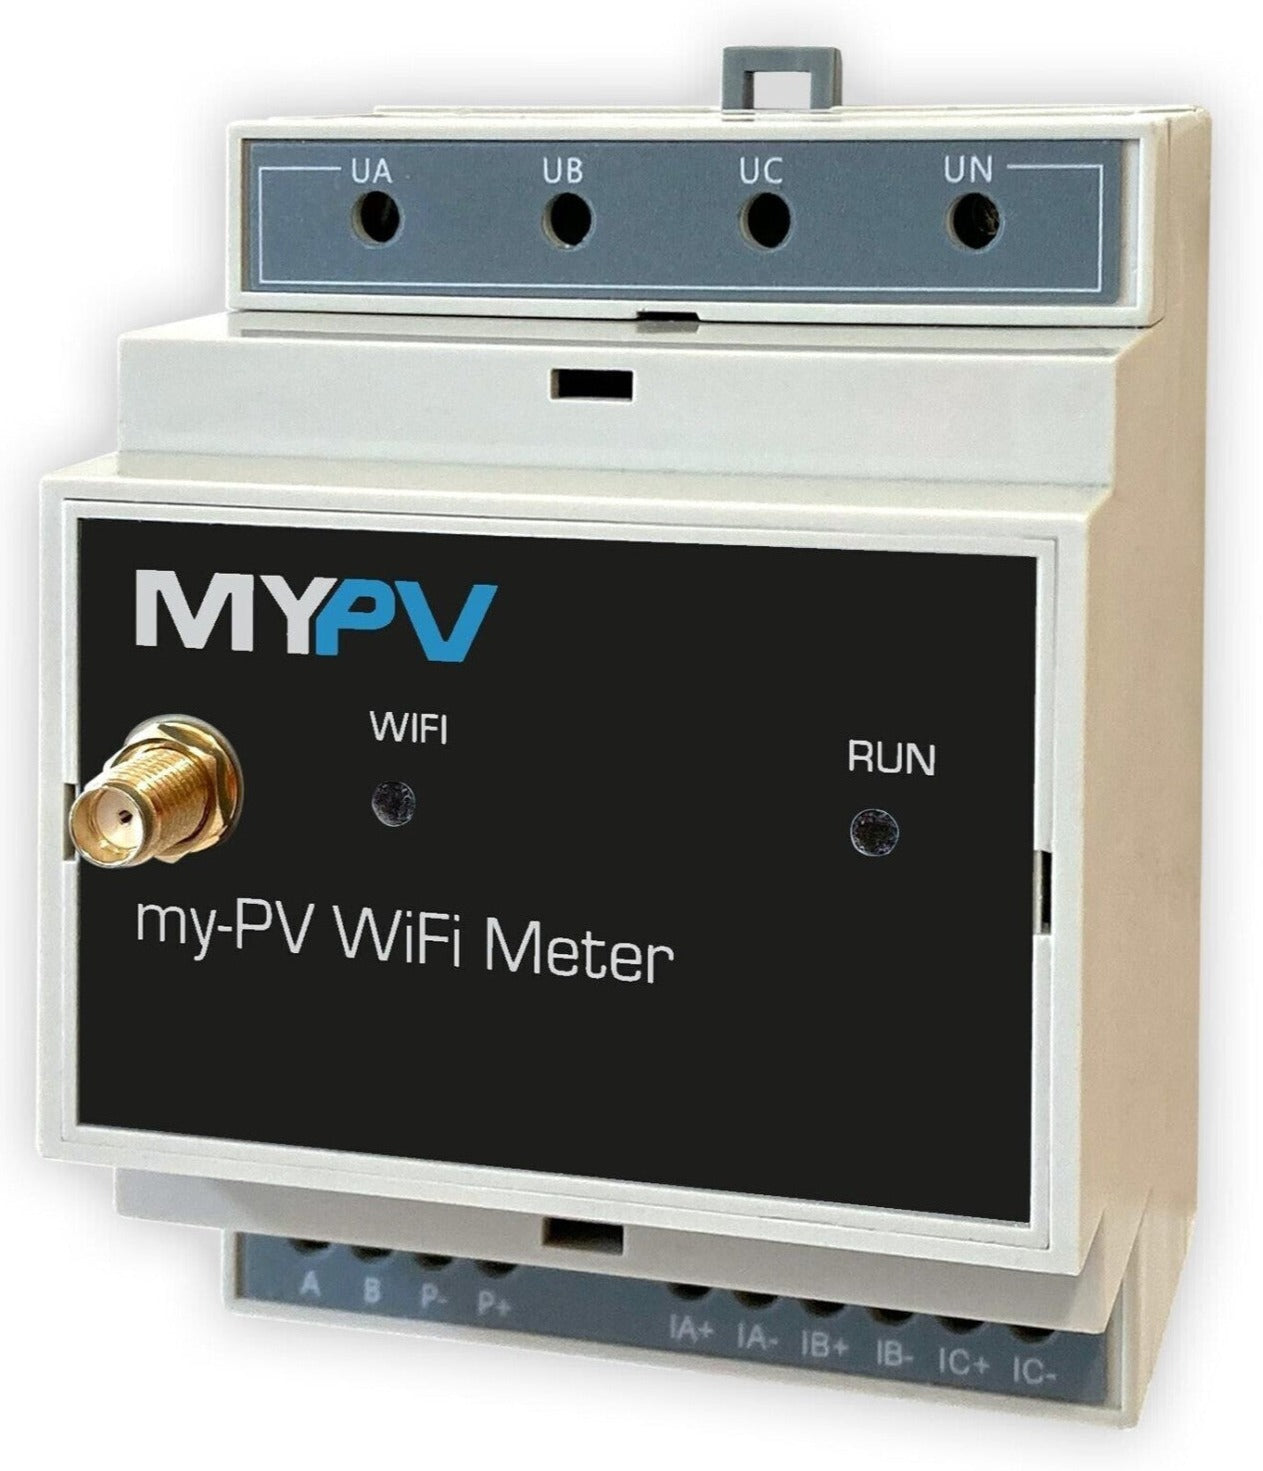 MY-PV WiFi Meter